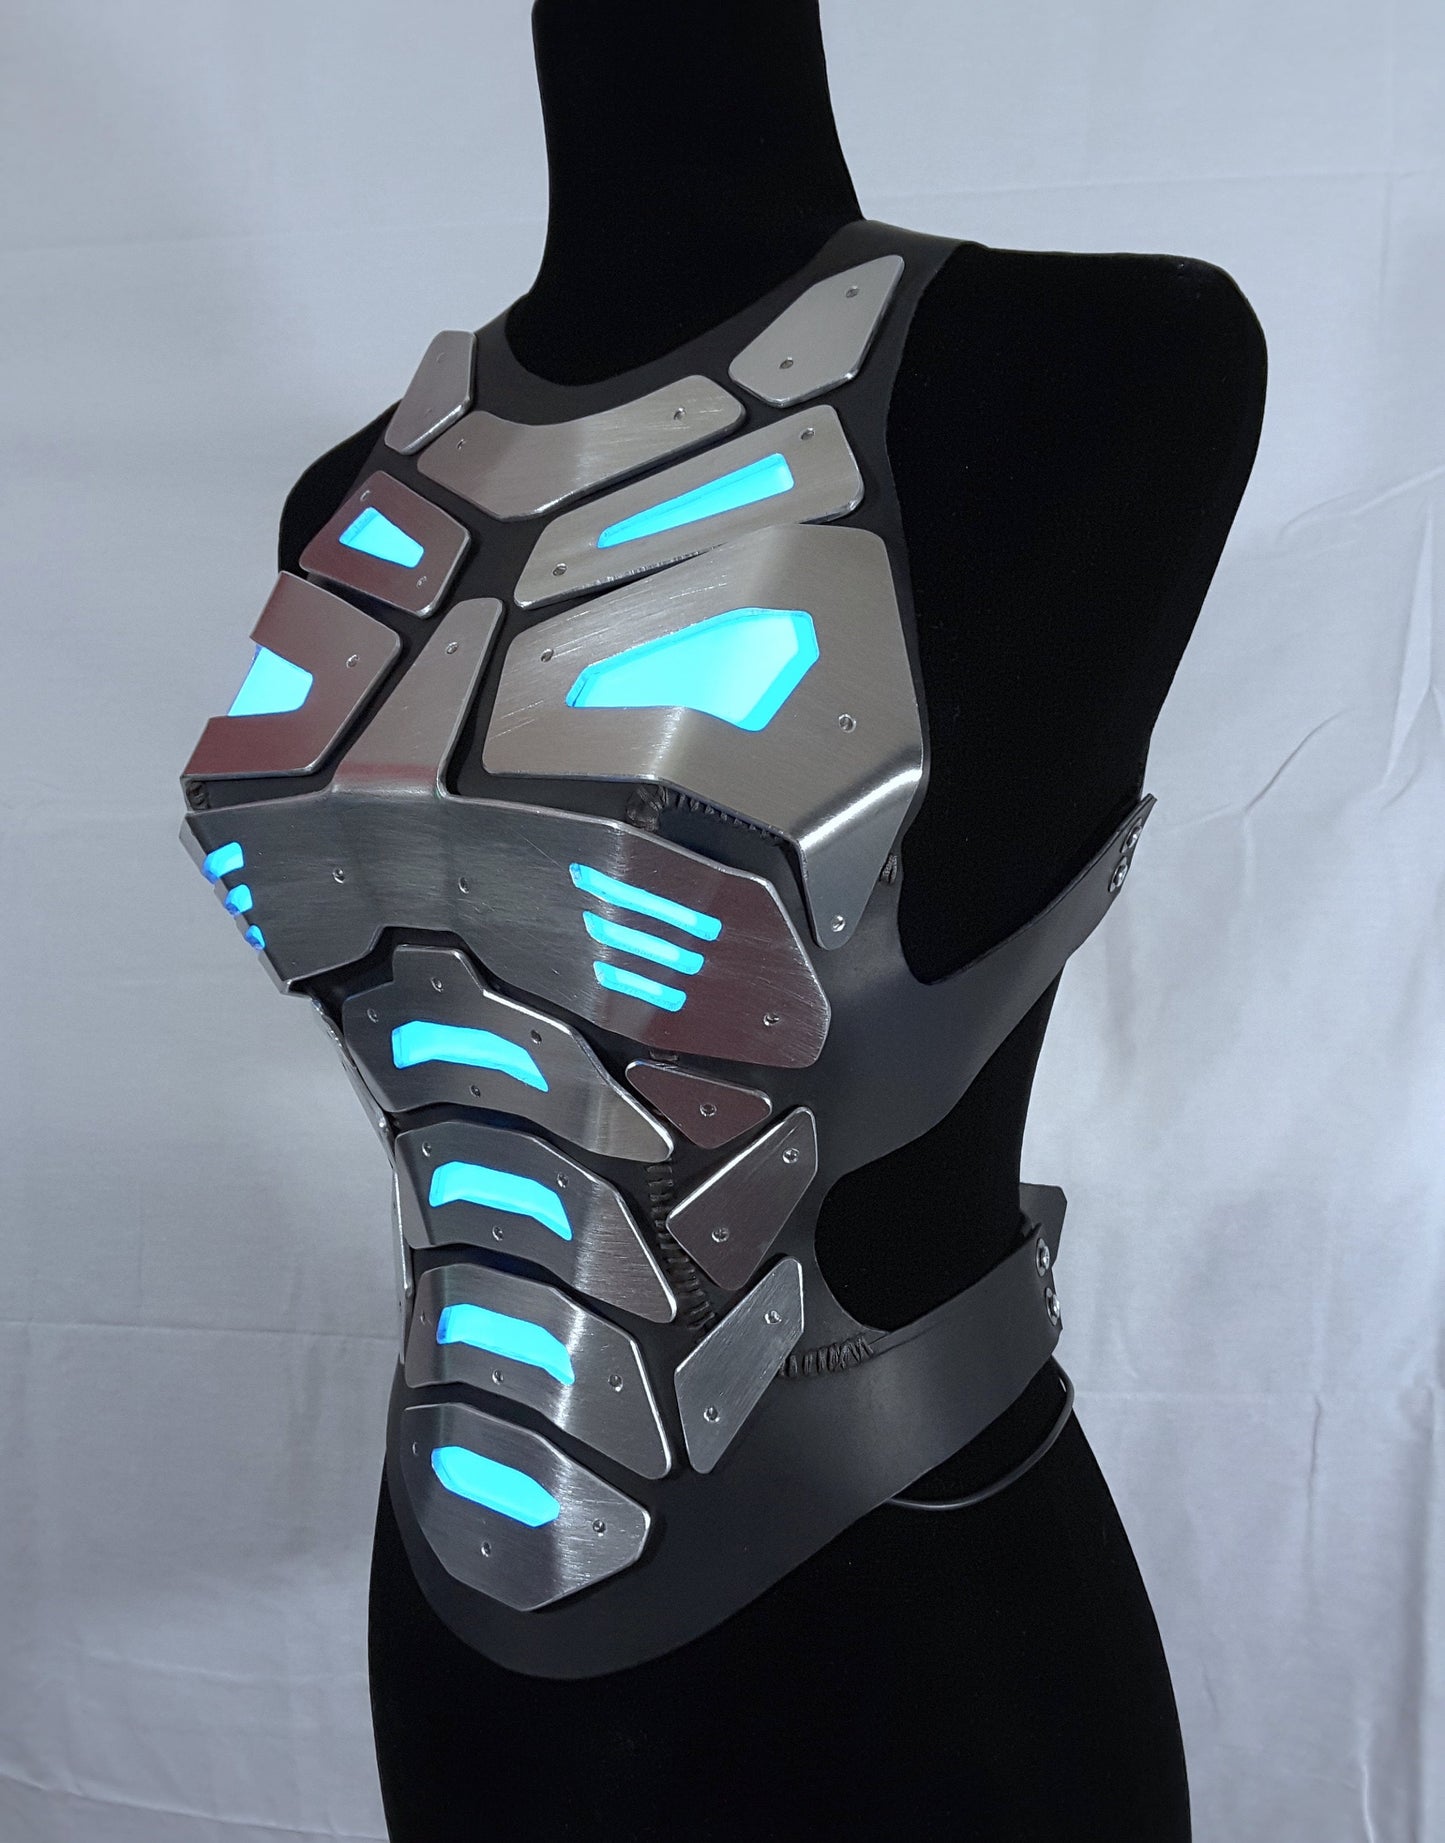 Cyber Torso Armor V1.0 - Women's